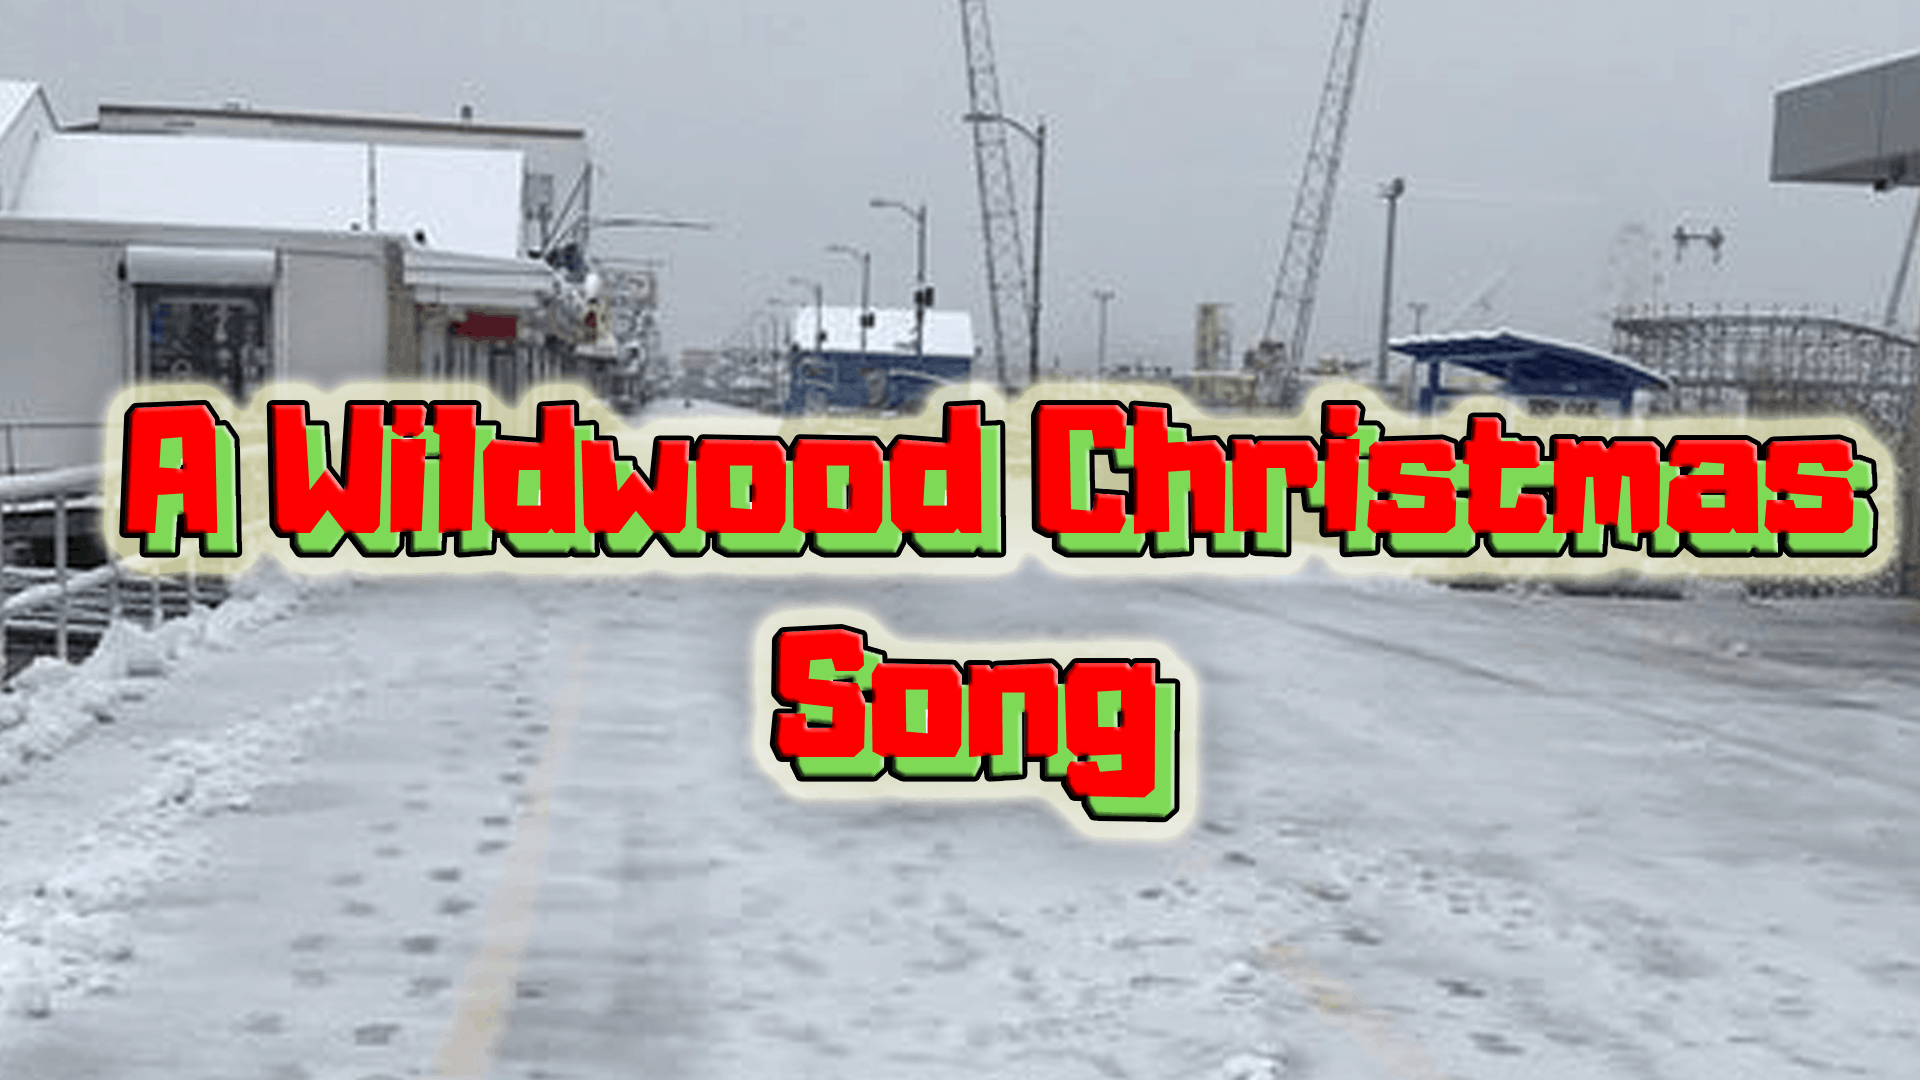 Wildwood Christmas Song 2018